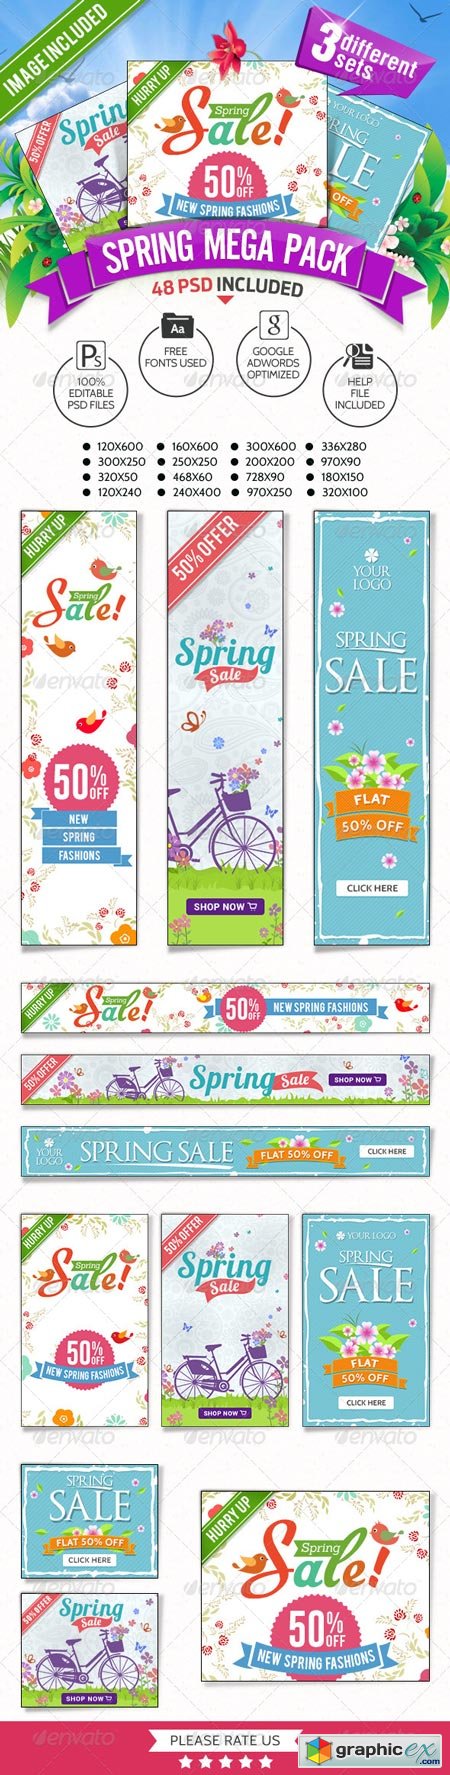 Spring Sale Mega Pack - 3 Banner Sets 7450266